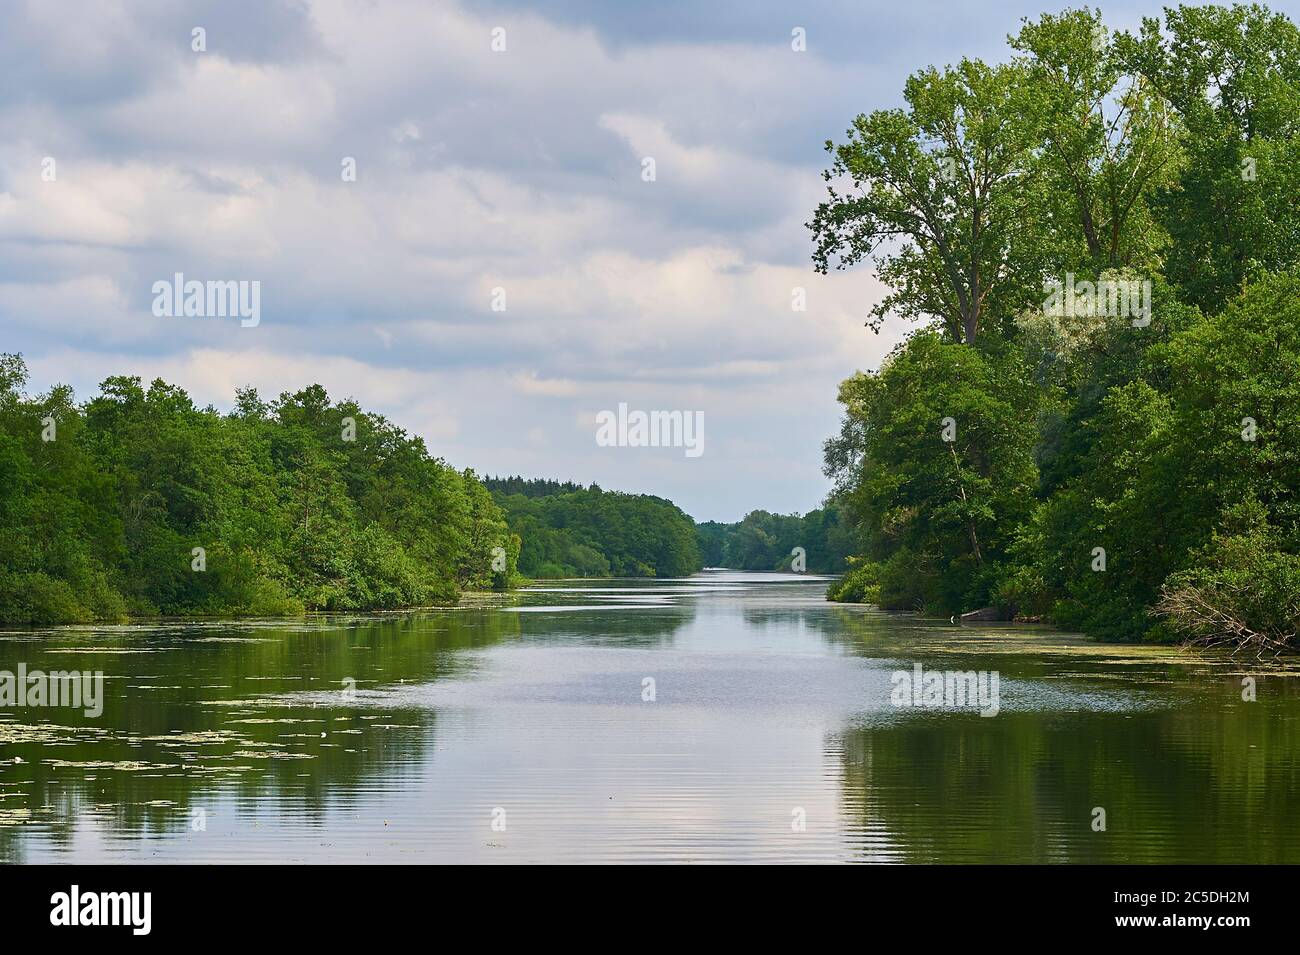 La rivière Wakenitz, également appelée Amazone du Nord, serpente du lac Ratzeburg à Lübeck, dans le nord de l'Allemagne Banque D'Images